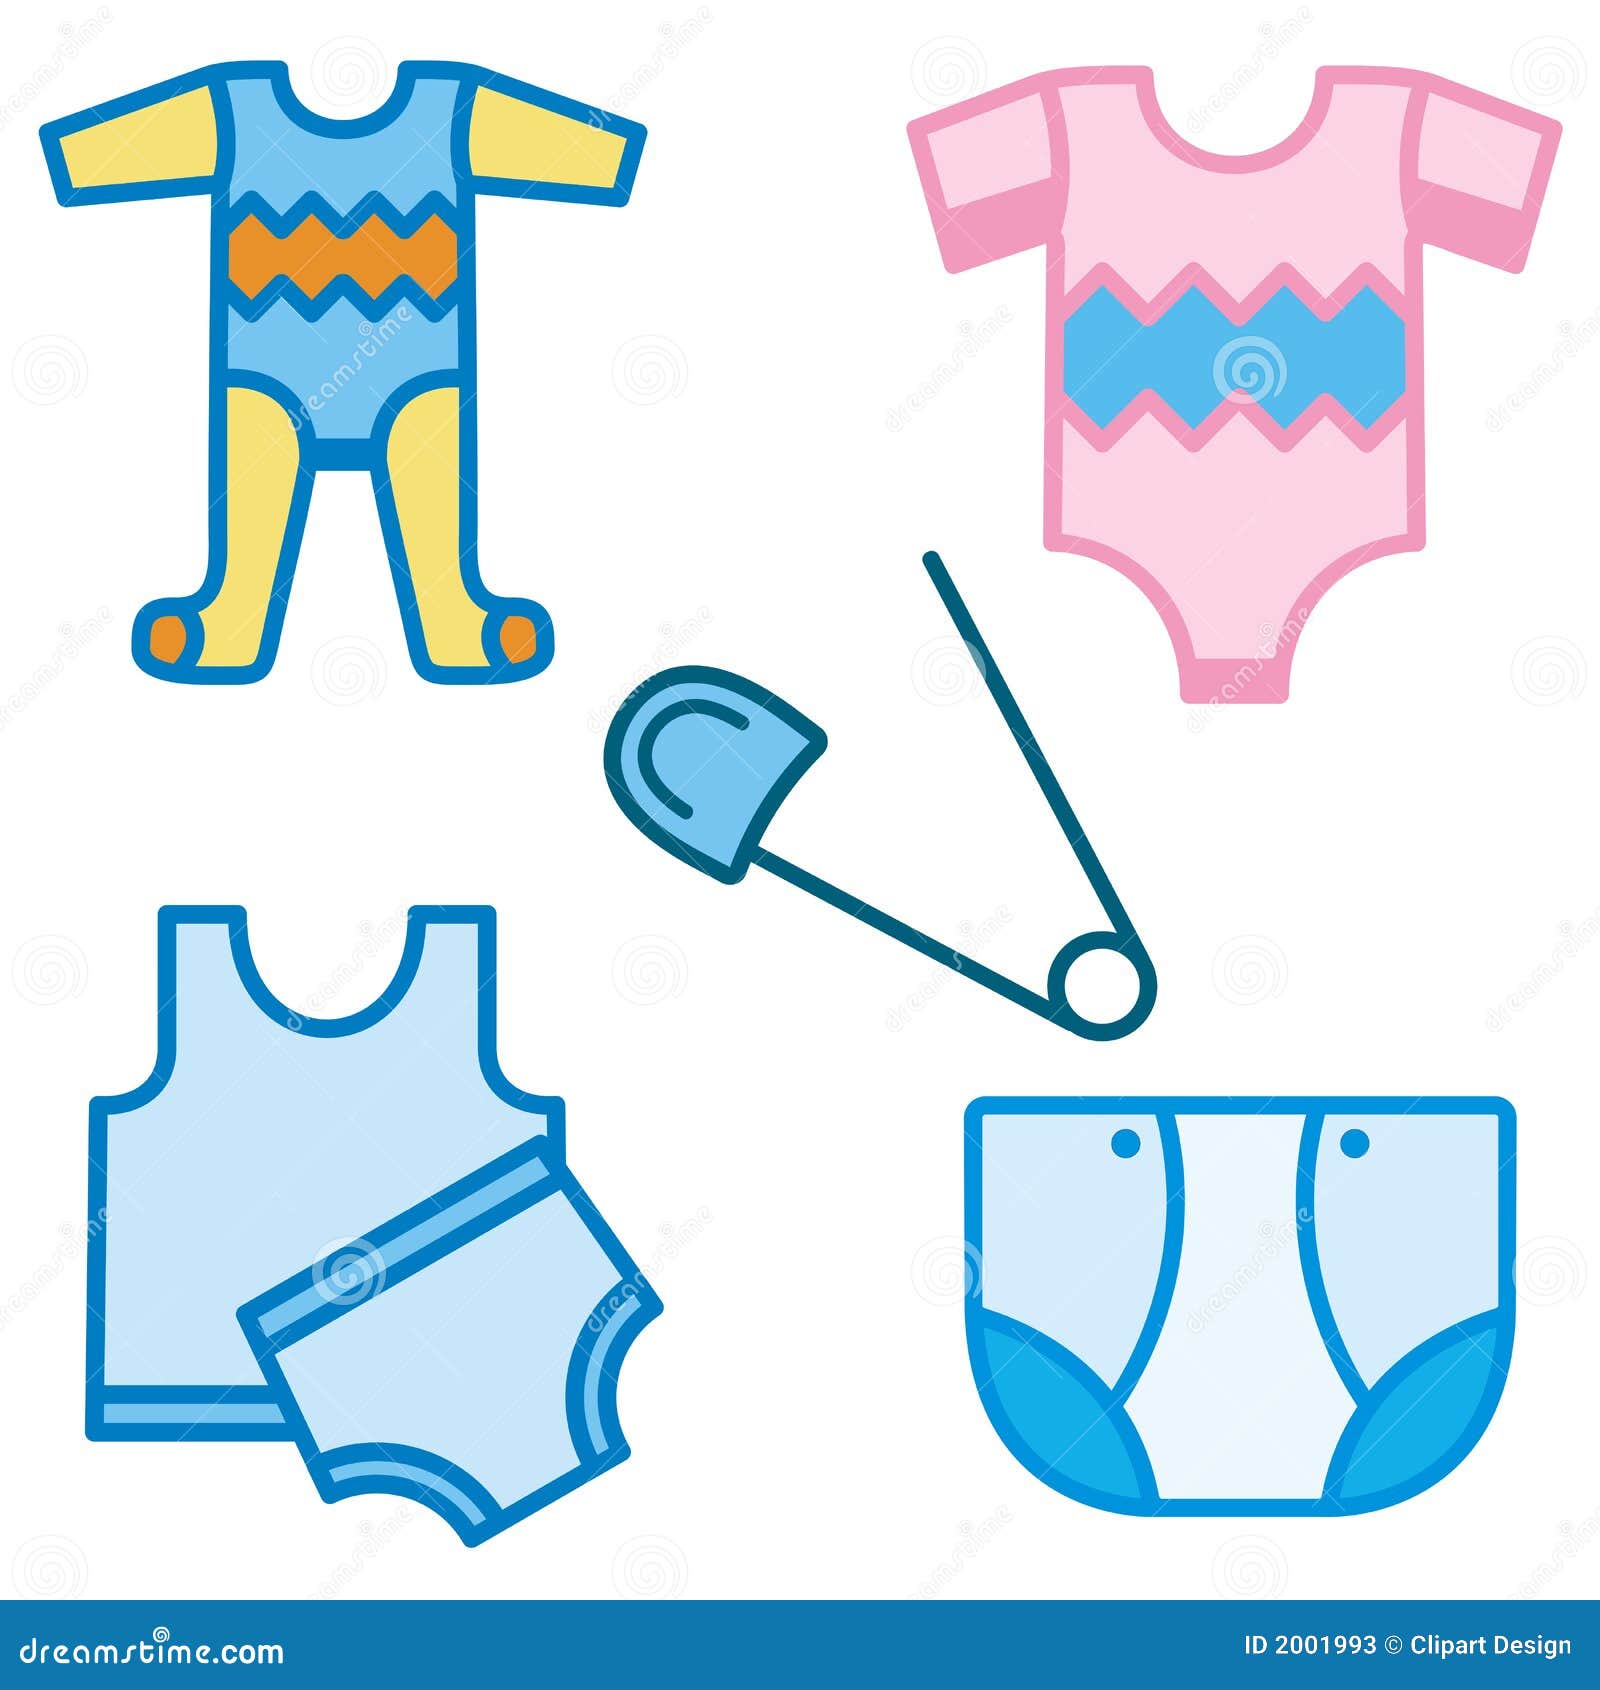 Cartoon Vector Illustration for Kids, T-shirt Stock Vector - Illustration  of garment, cartoon: 206946763